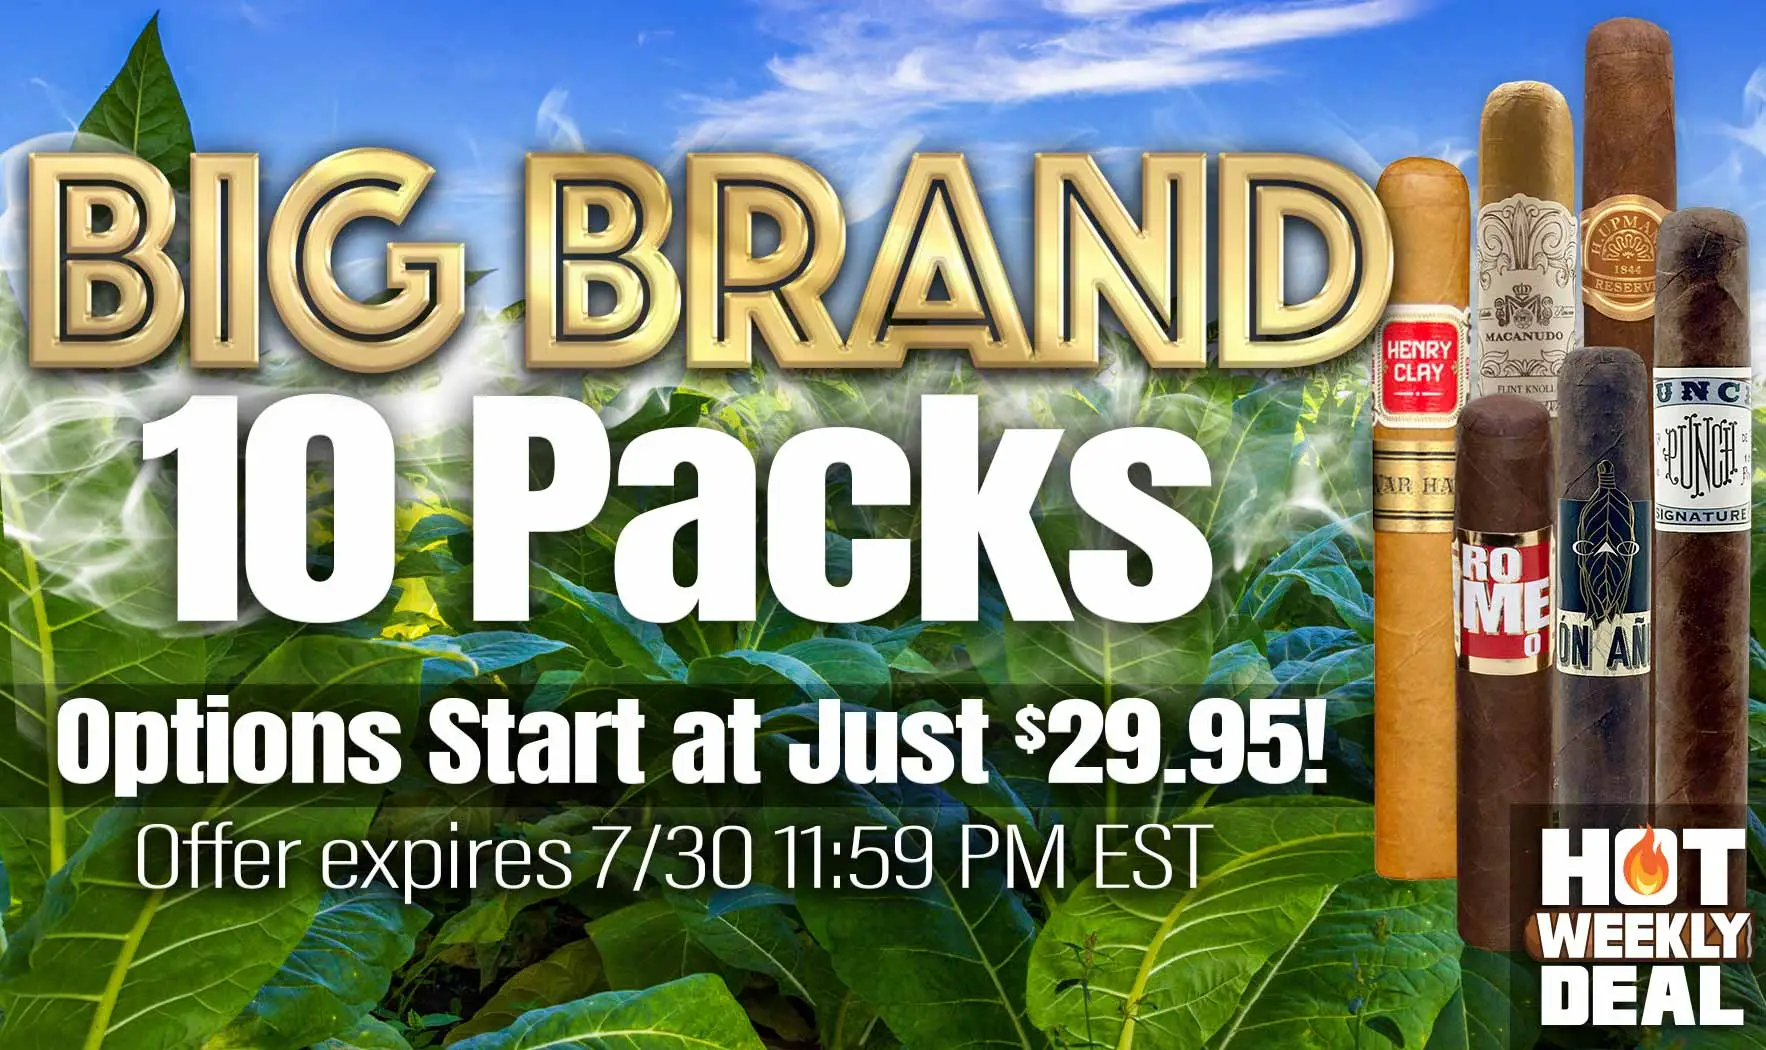 Hot-Weekly Deal Big Brand 10 Packs